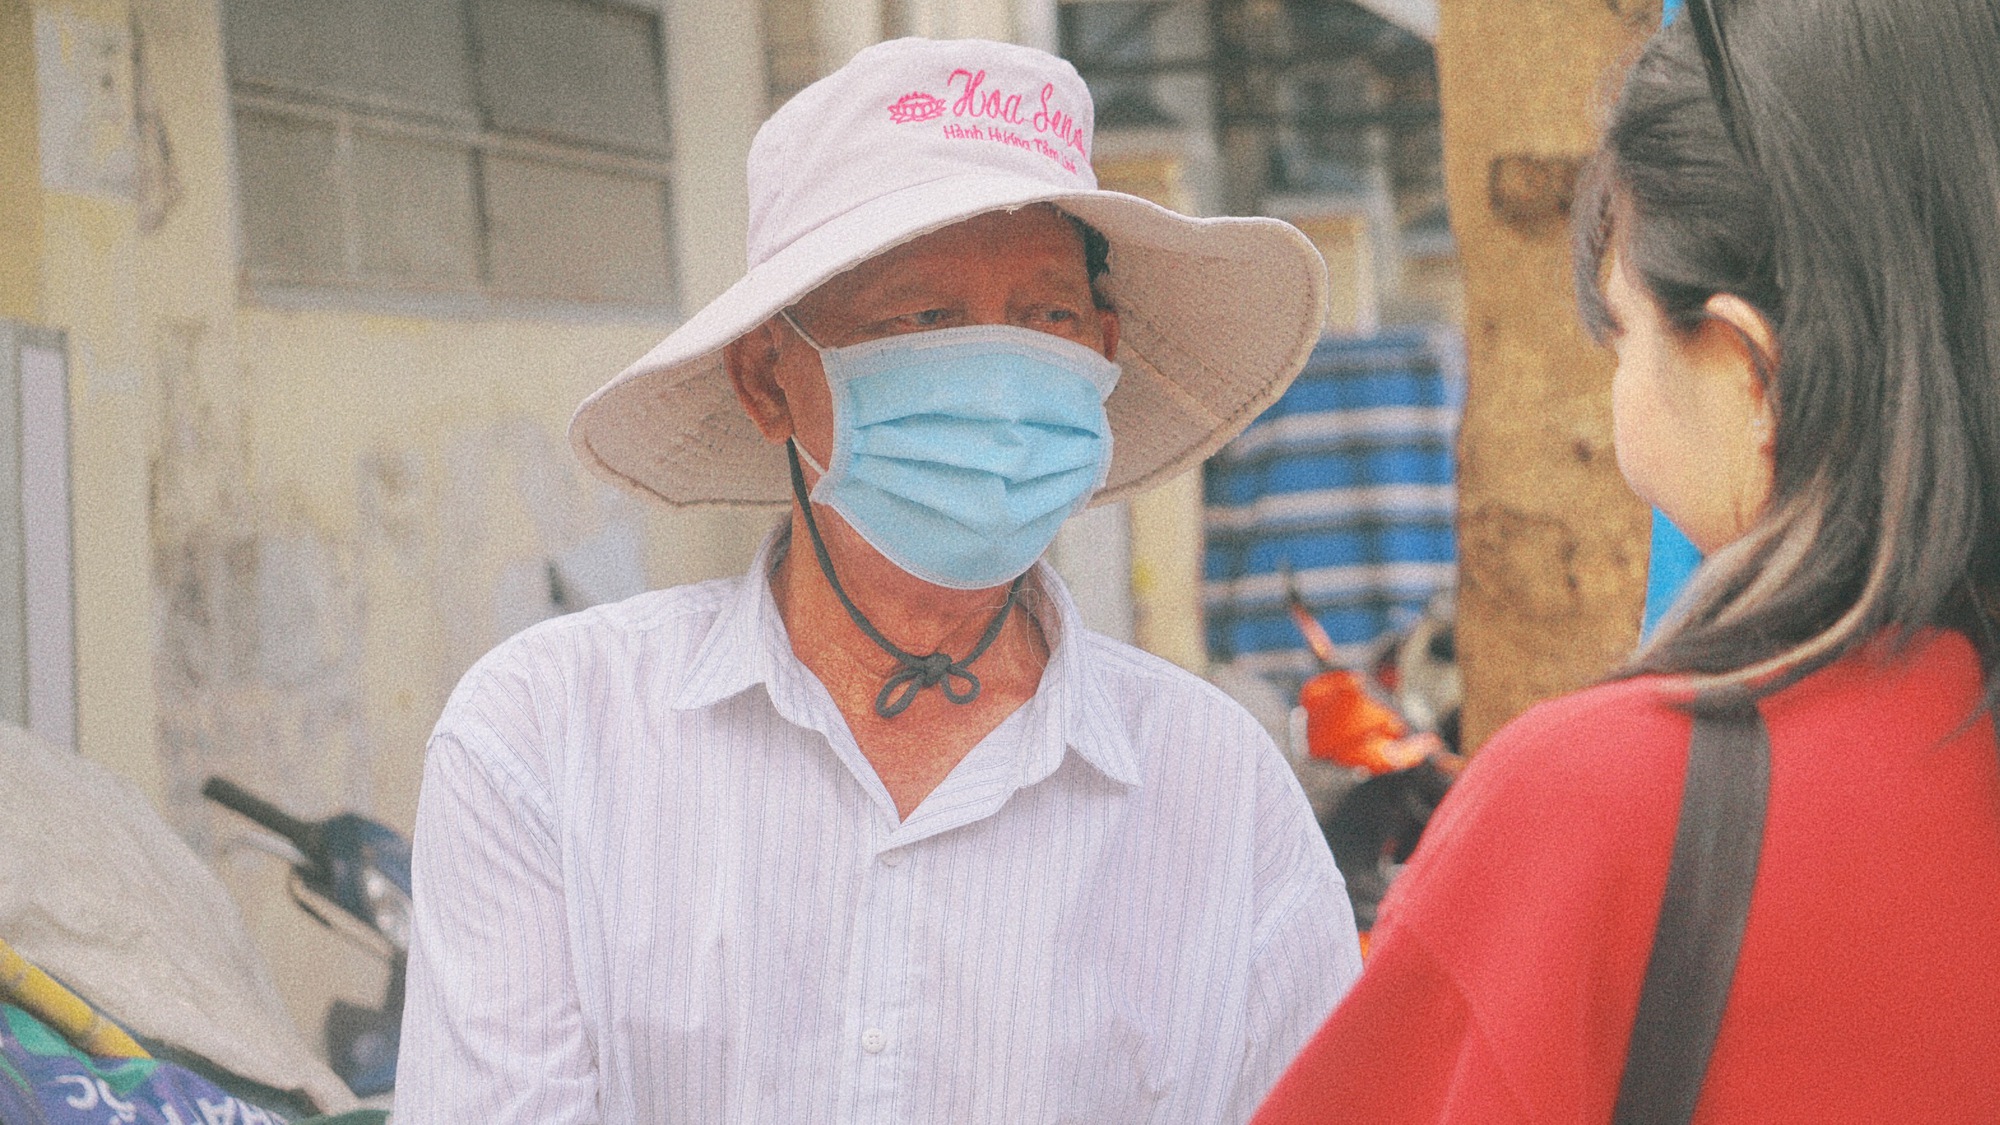 Cụ ông gần 90 tuổi đội mưa bán sách cũ ở vỉa hè Sài Gòn: "Lần nào thấy người trẻ đến mua sách là tôi vui lắm"- Ảnh 7.